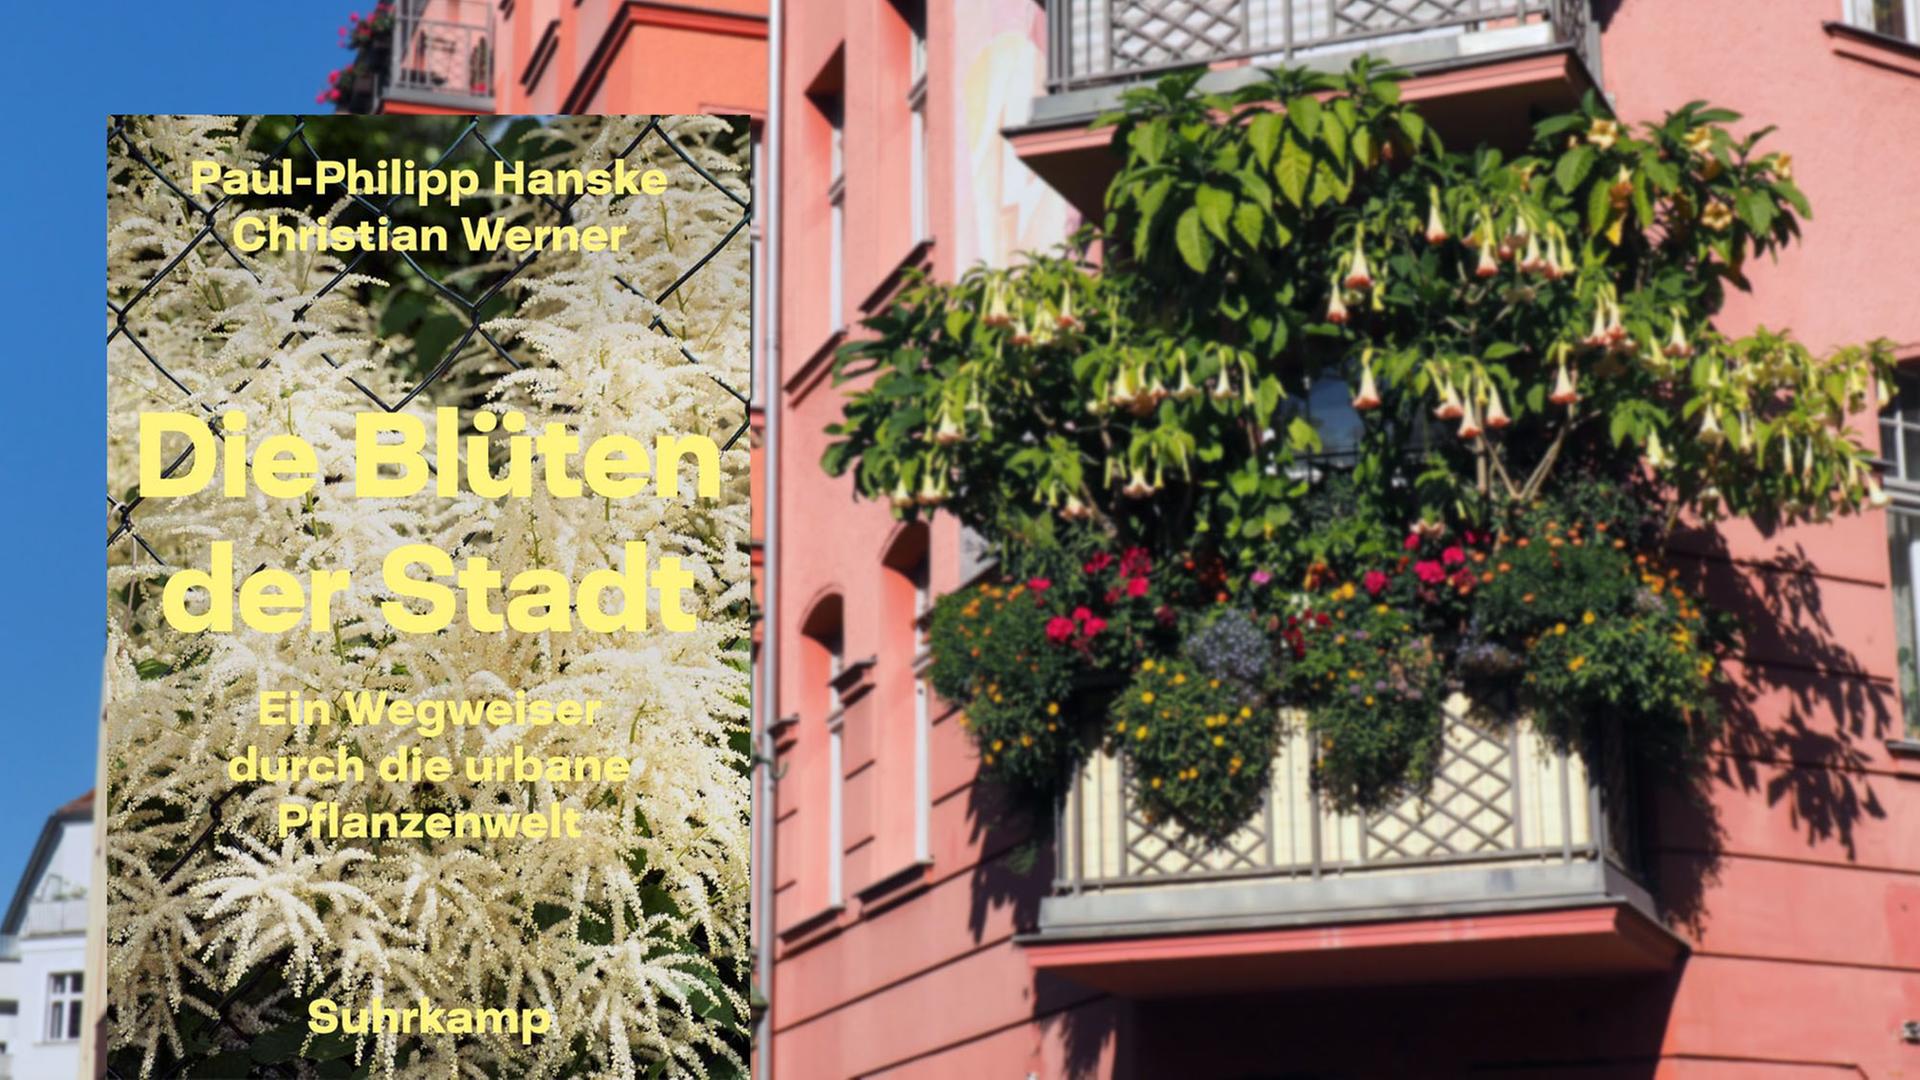 Cover von "Die Blüten der Stadt" von Paul-Philipp Hanske und Christian Werner, im Hintergrund ist ein bepflanzter städtischer Balkon zu sehen